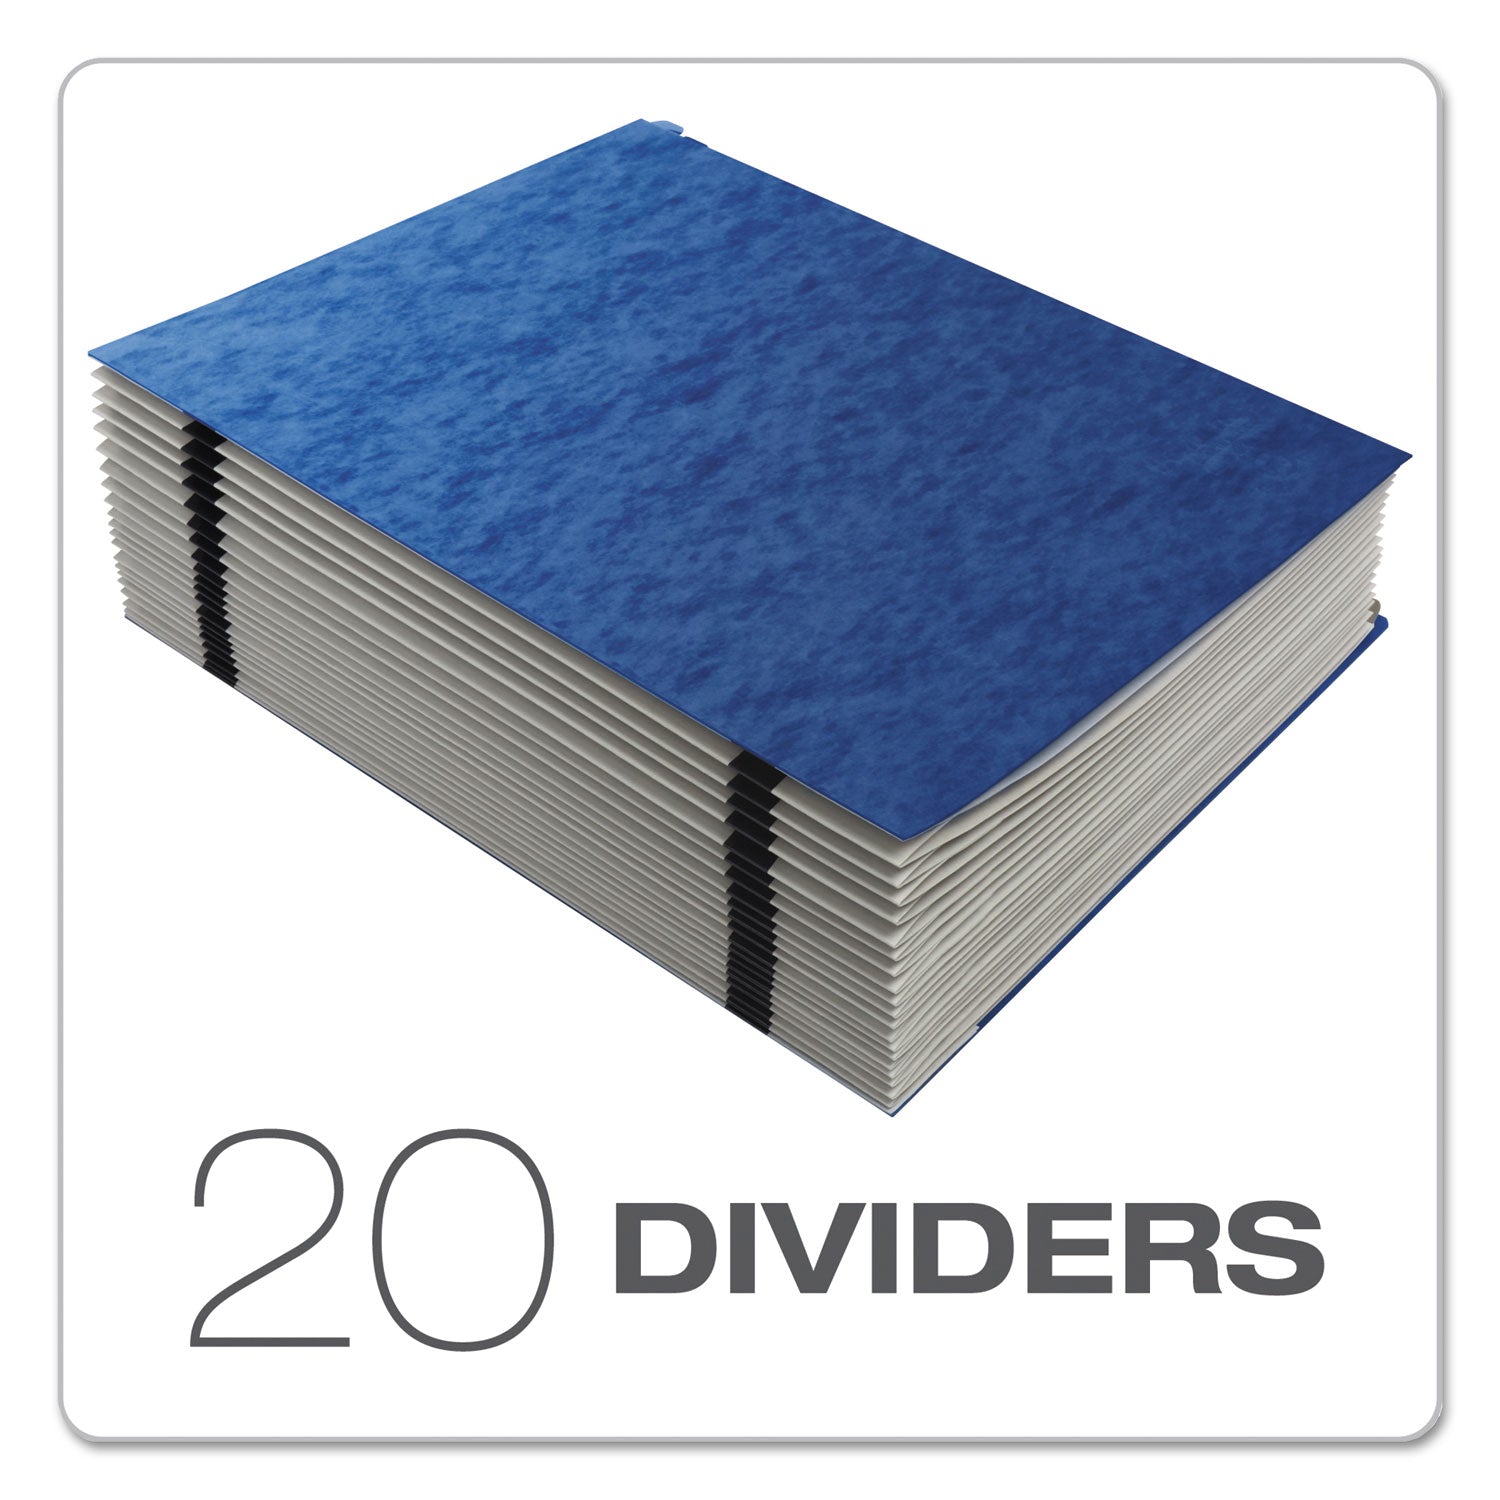 Expanding Desk File, 23 Dividers, Alpha Index, Letter Size, Blue Cover - 